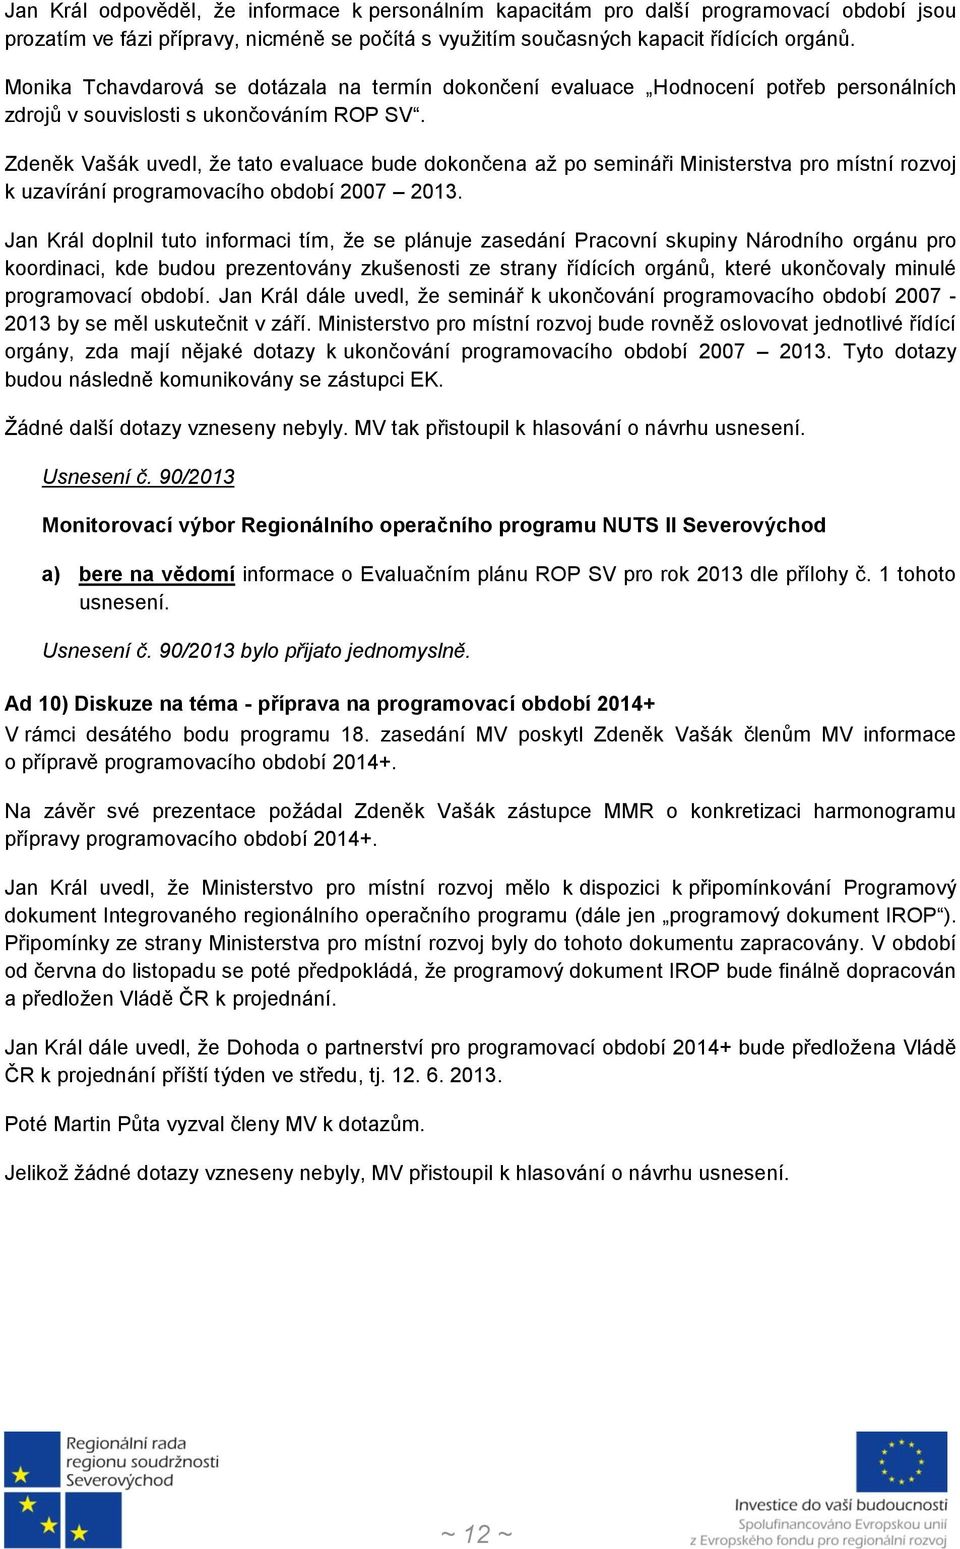 Zdeněk Vašák uvedl, že tato evaluace bude dokončena až po semináři Ministerstva pro místní rozvoj k uzavírání programovacího období 2007 2013.